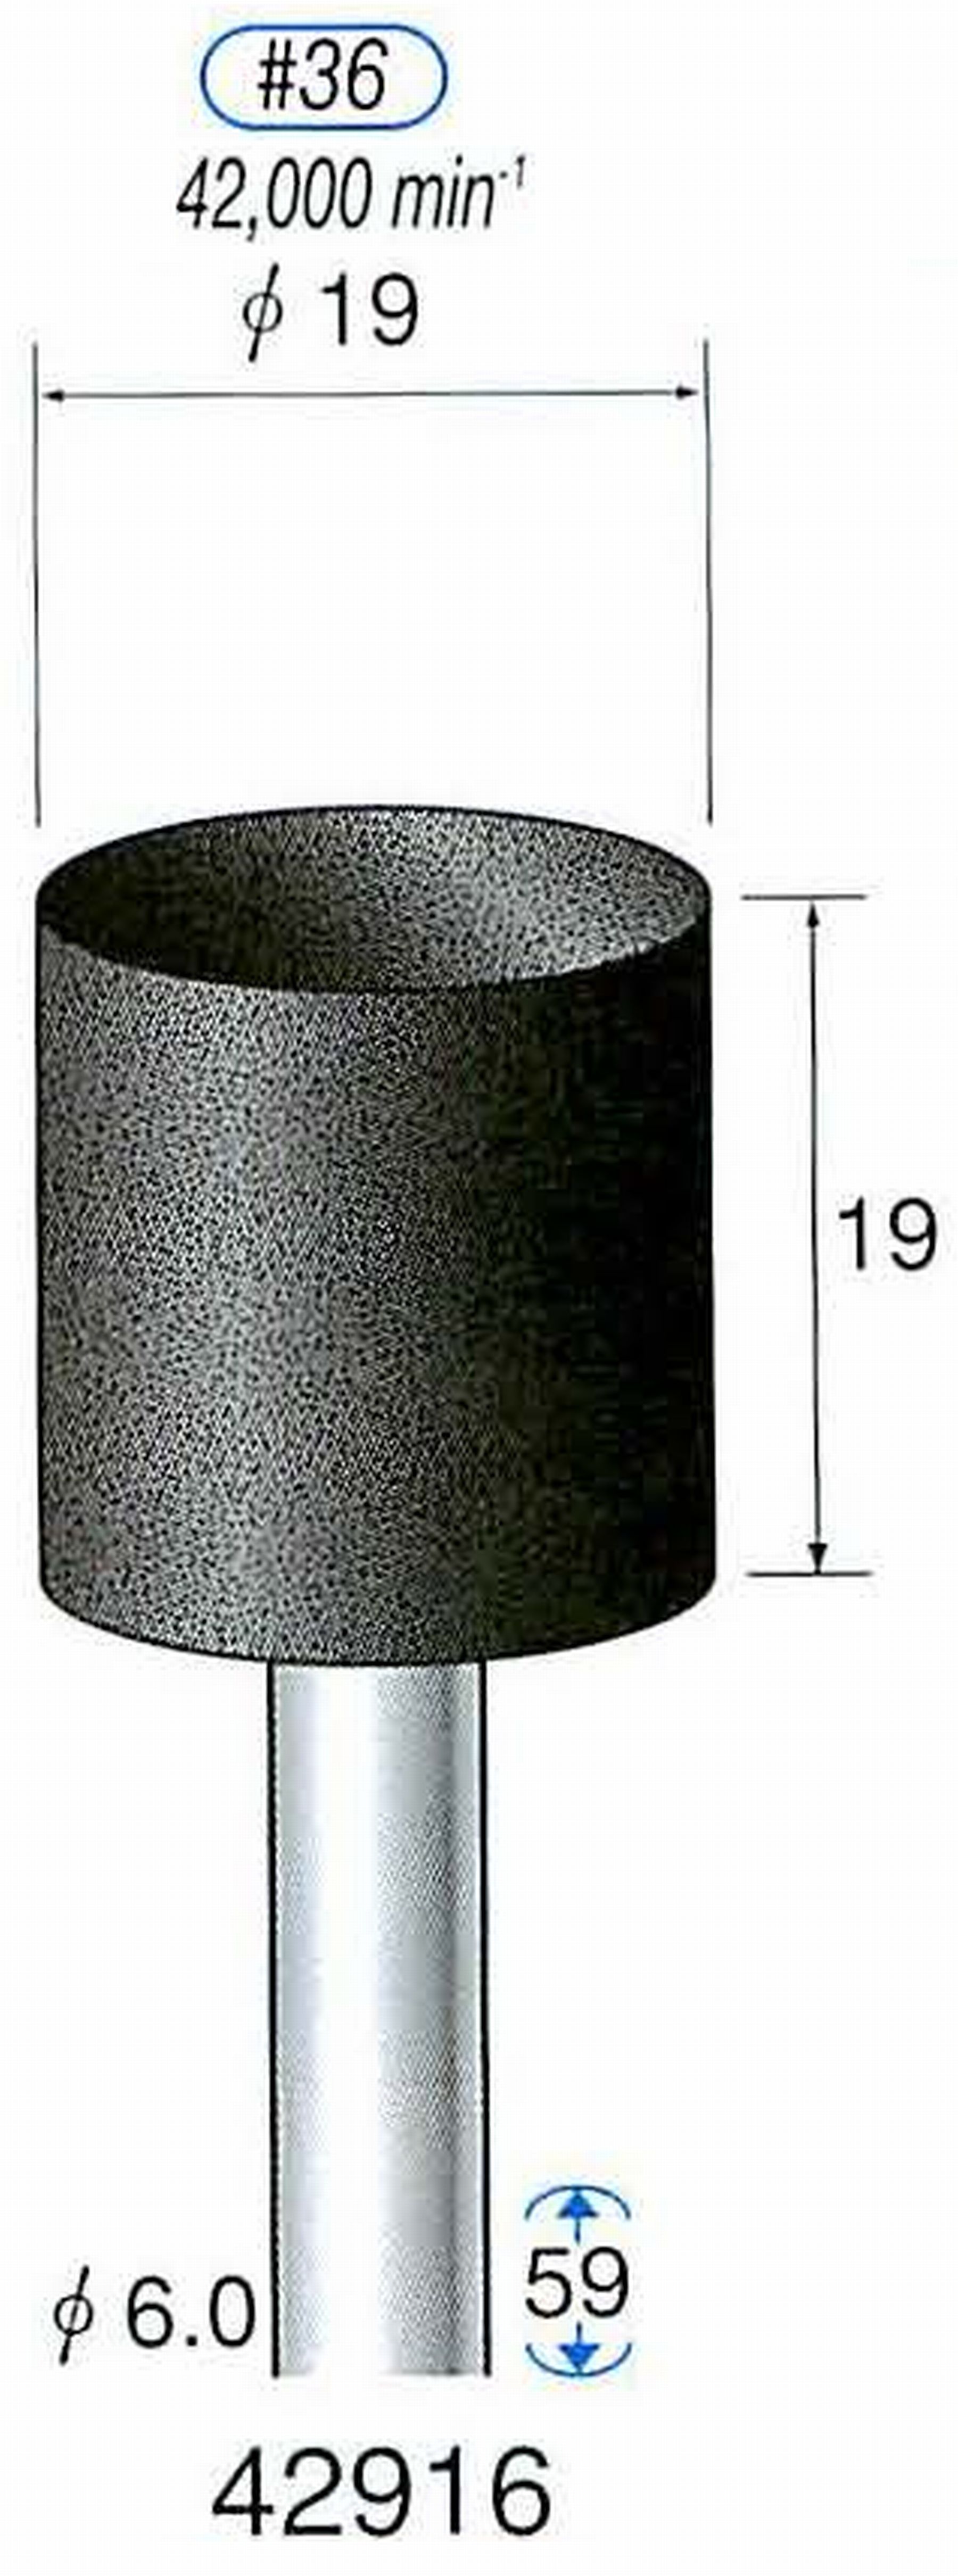 ナカニシ/NAKANISHI 軸付砥石(A砥粒) ブラック砥石 軸径(シャンク) φ6.0mm 42916